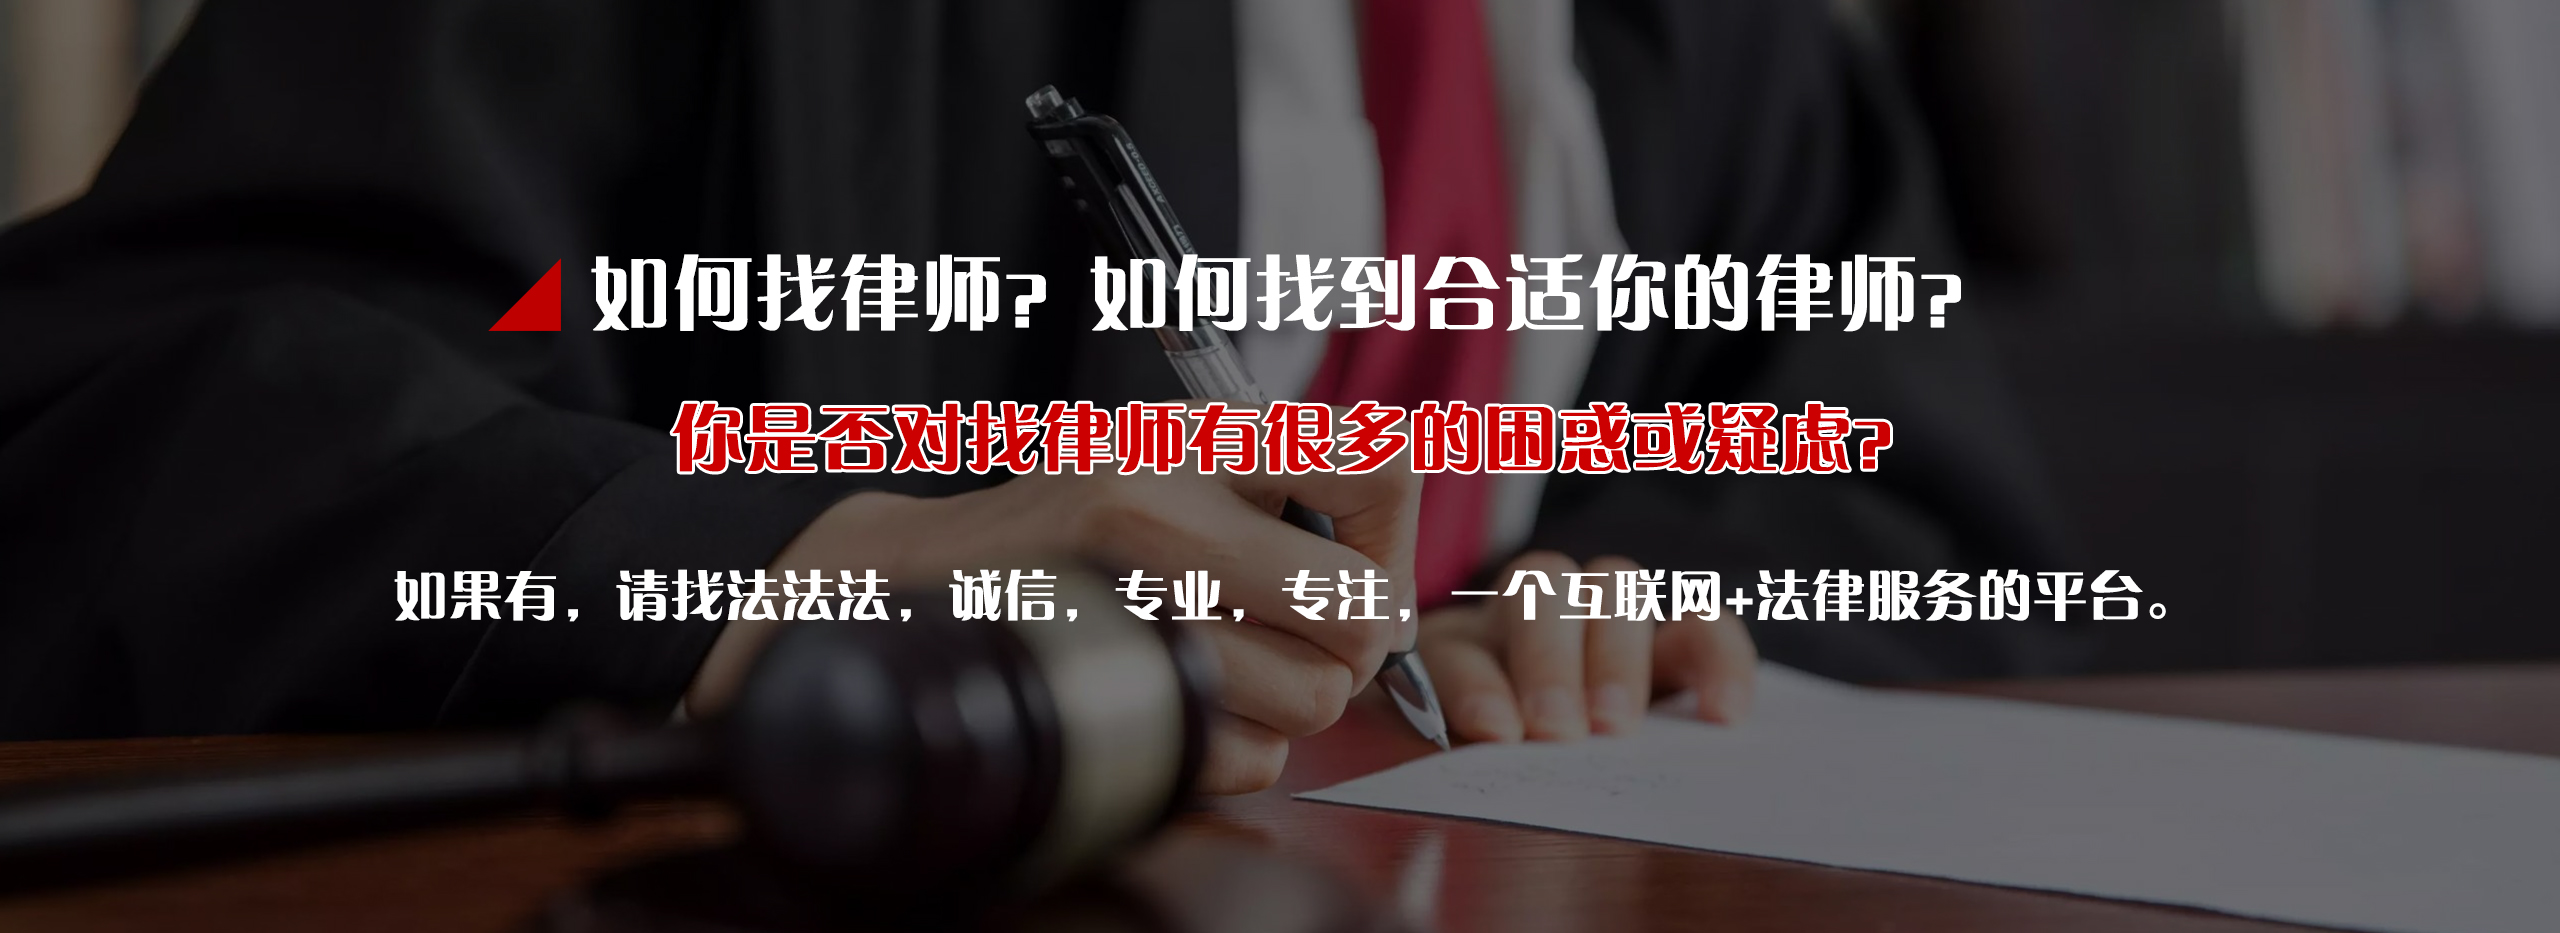 高品质员工财产侵吞_财产顾问相关-四川法法法信息科技有限公司